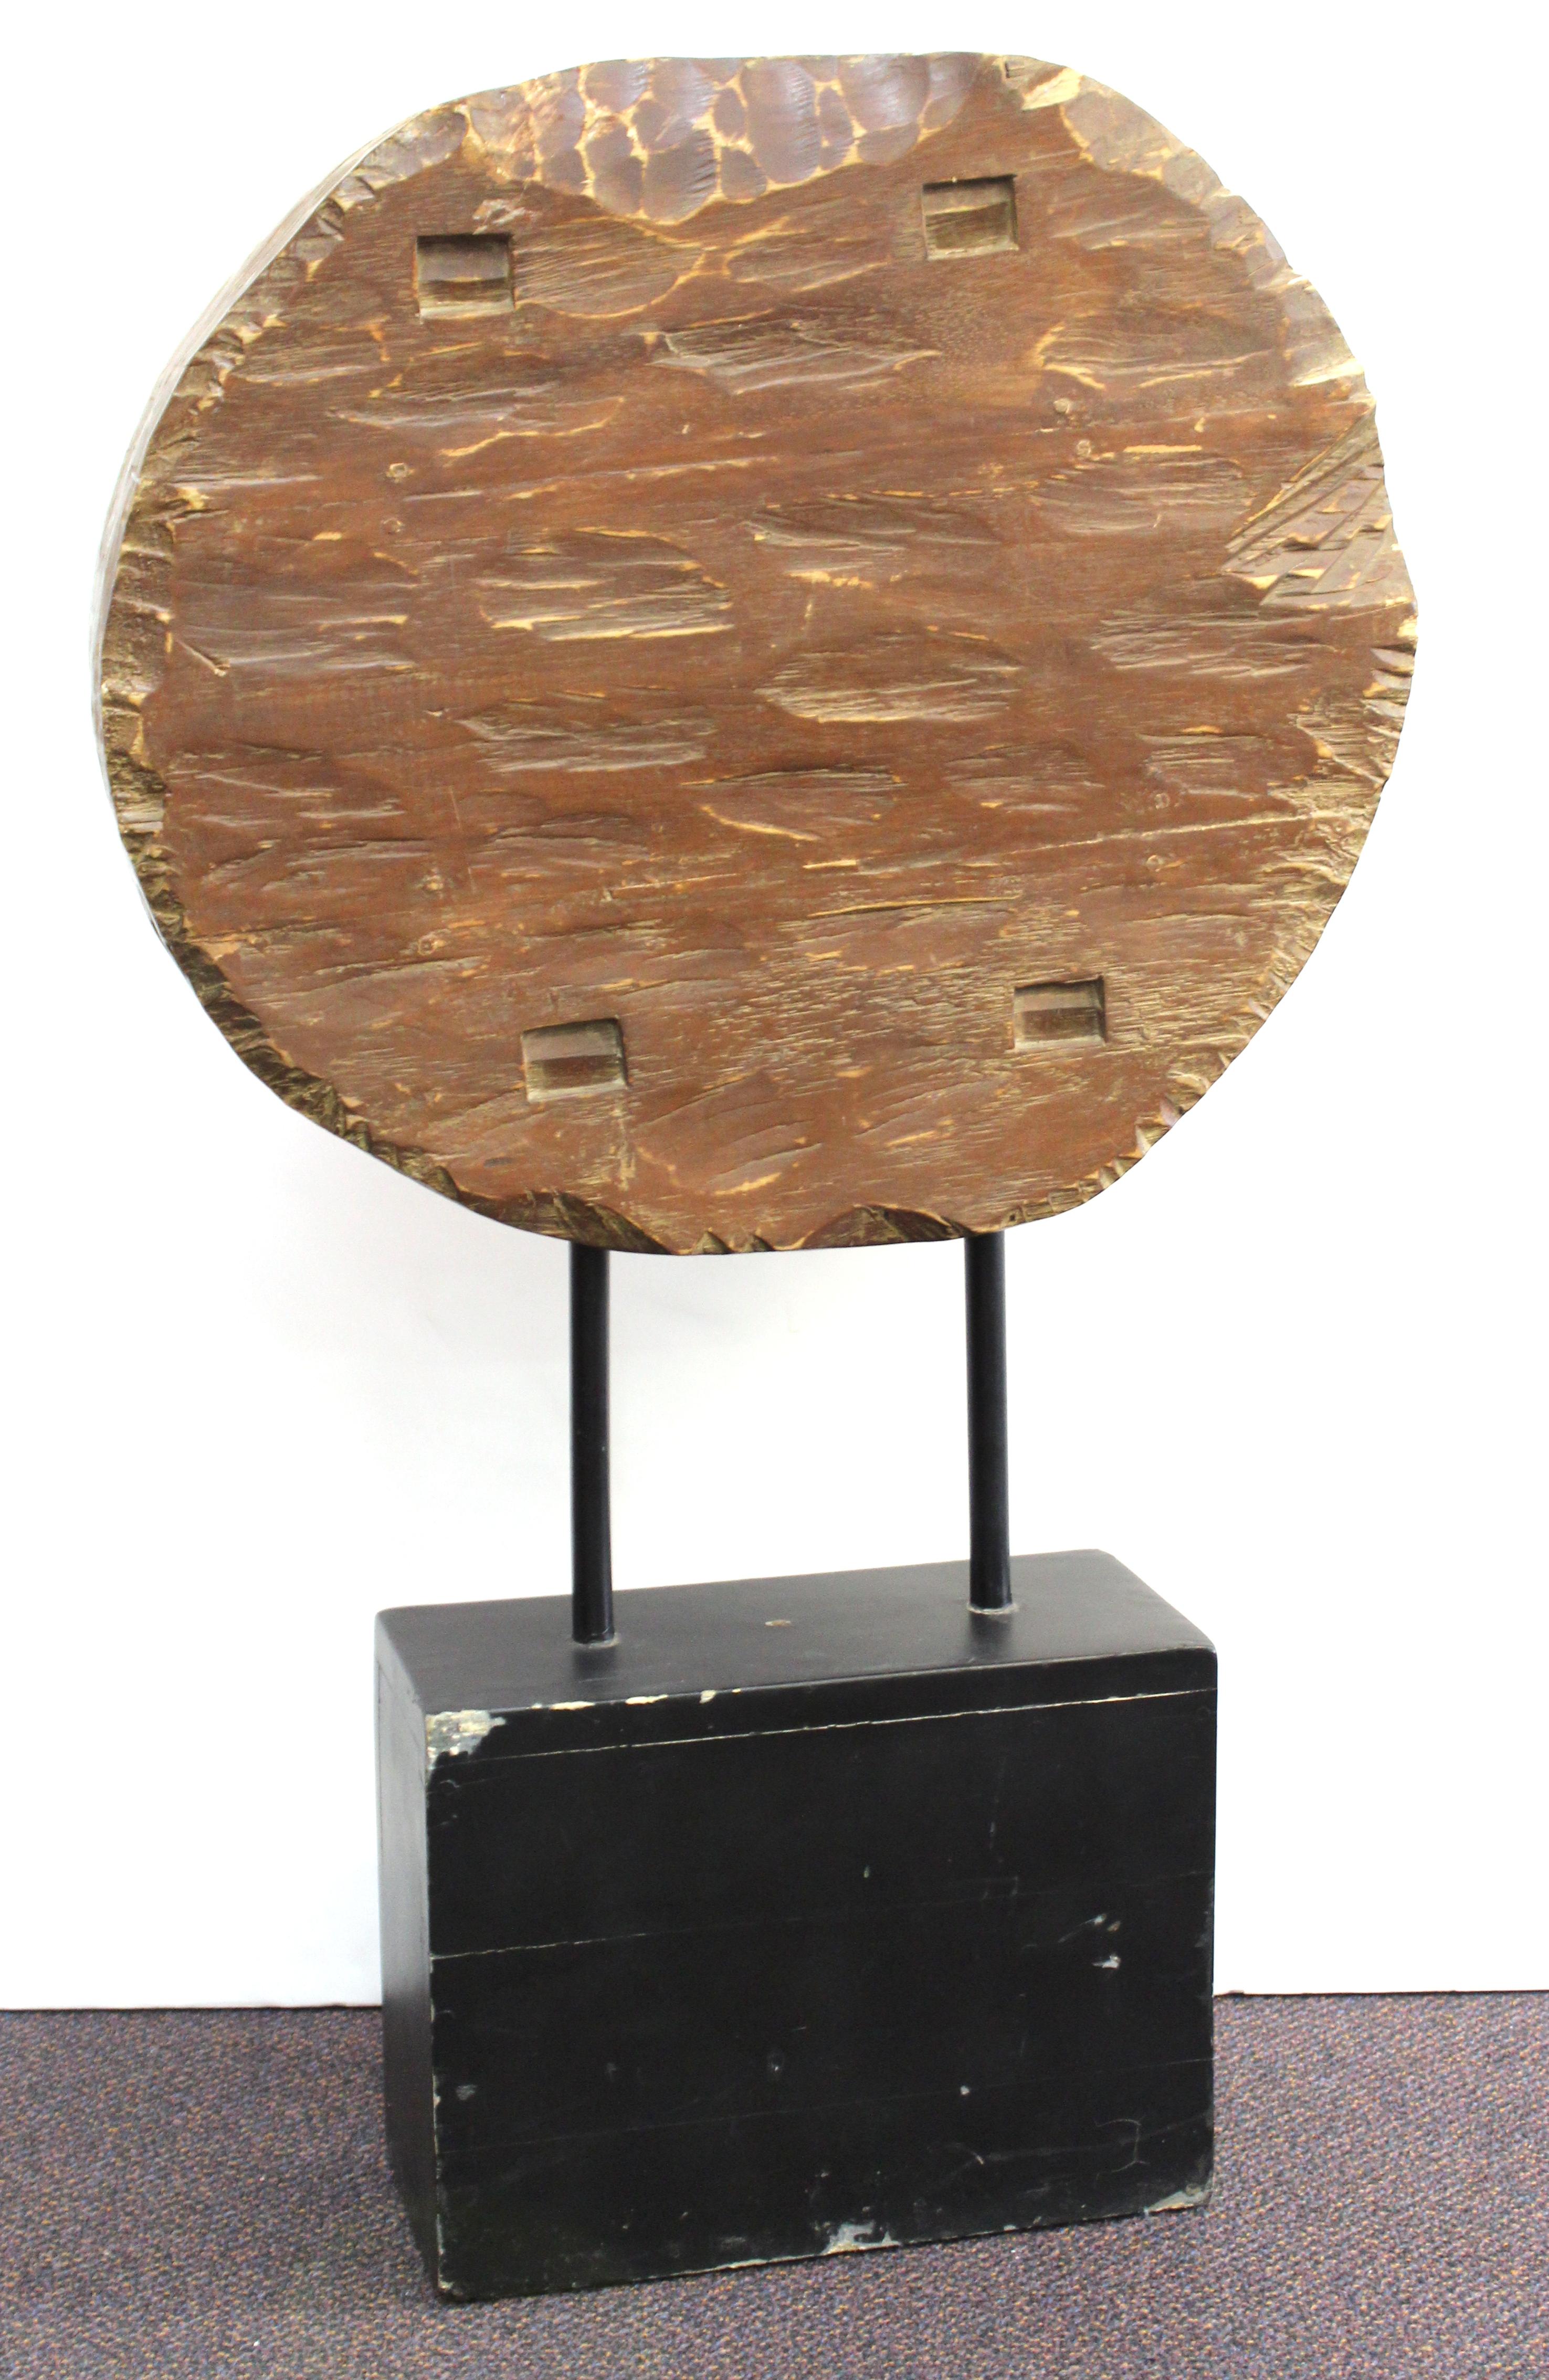 Brutalist Modern Carved Wood Disc Sculpture on Base (amerikanisch)